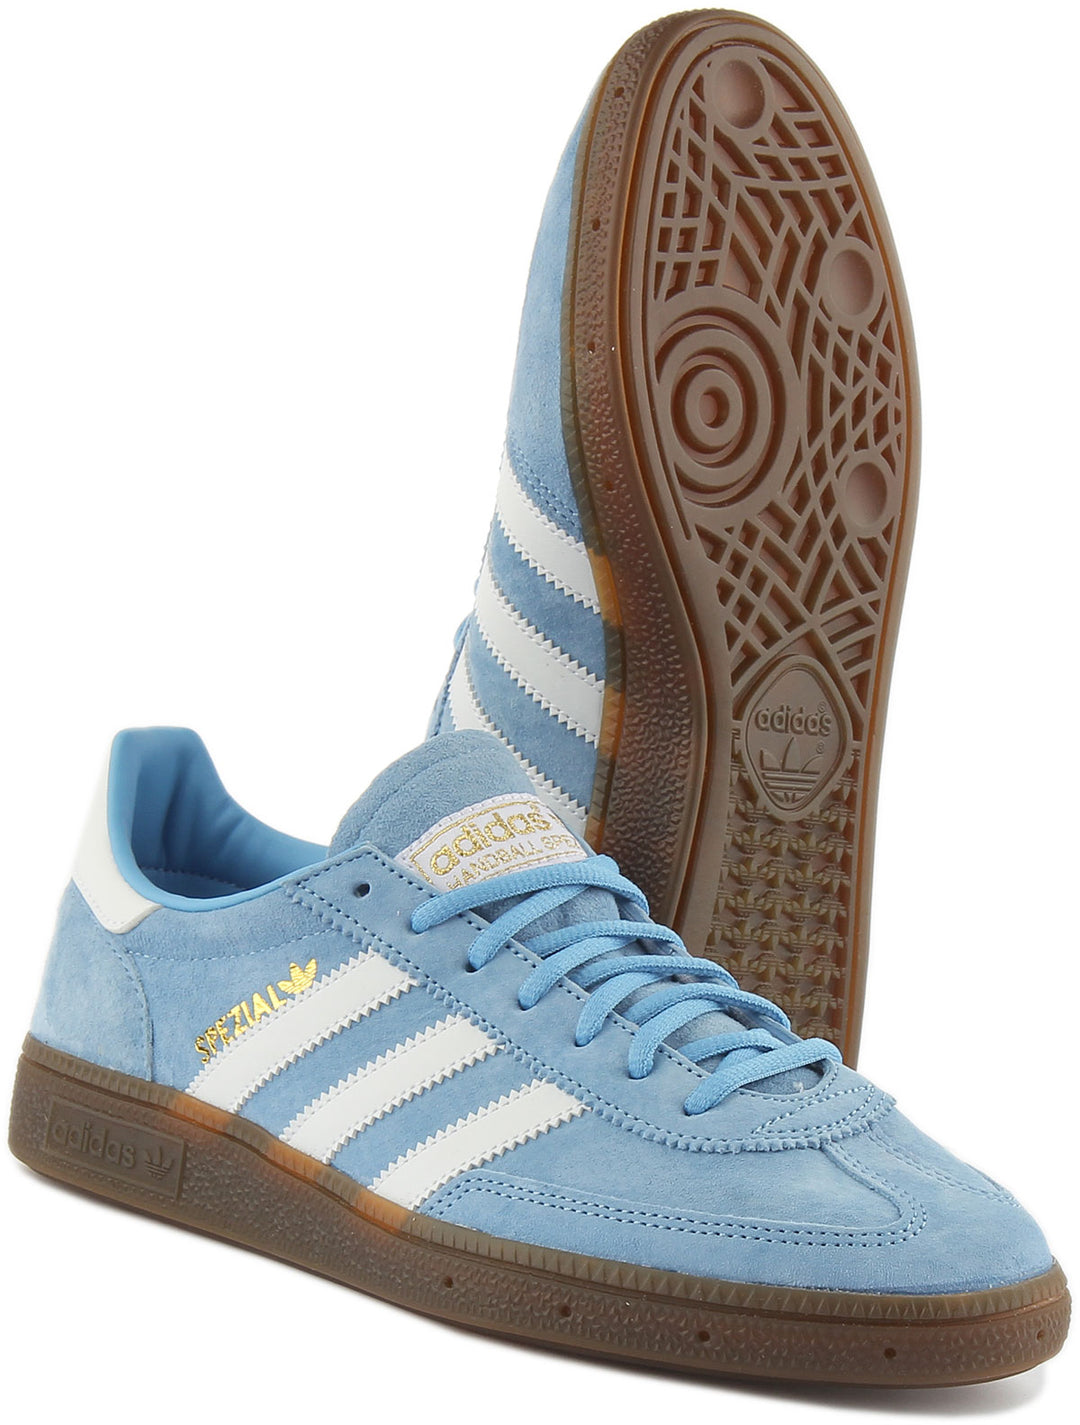 Adidas Handball Spezial Zapatillas con cordones de estilo años 70 para hombre en azul claro